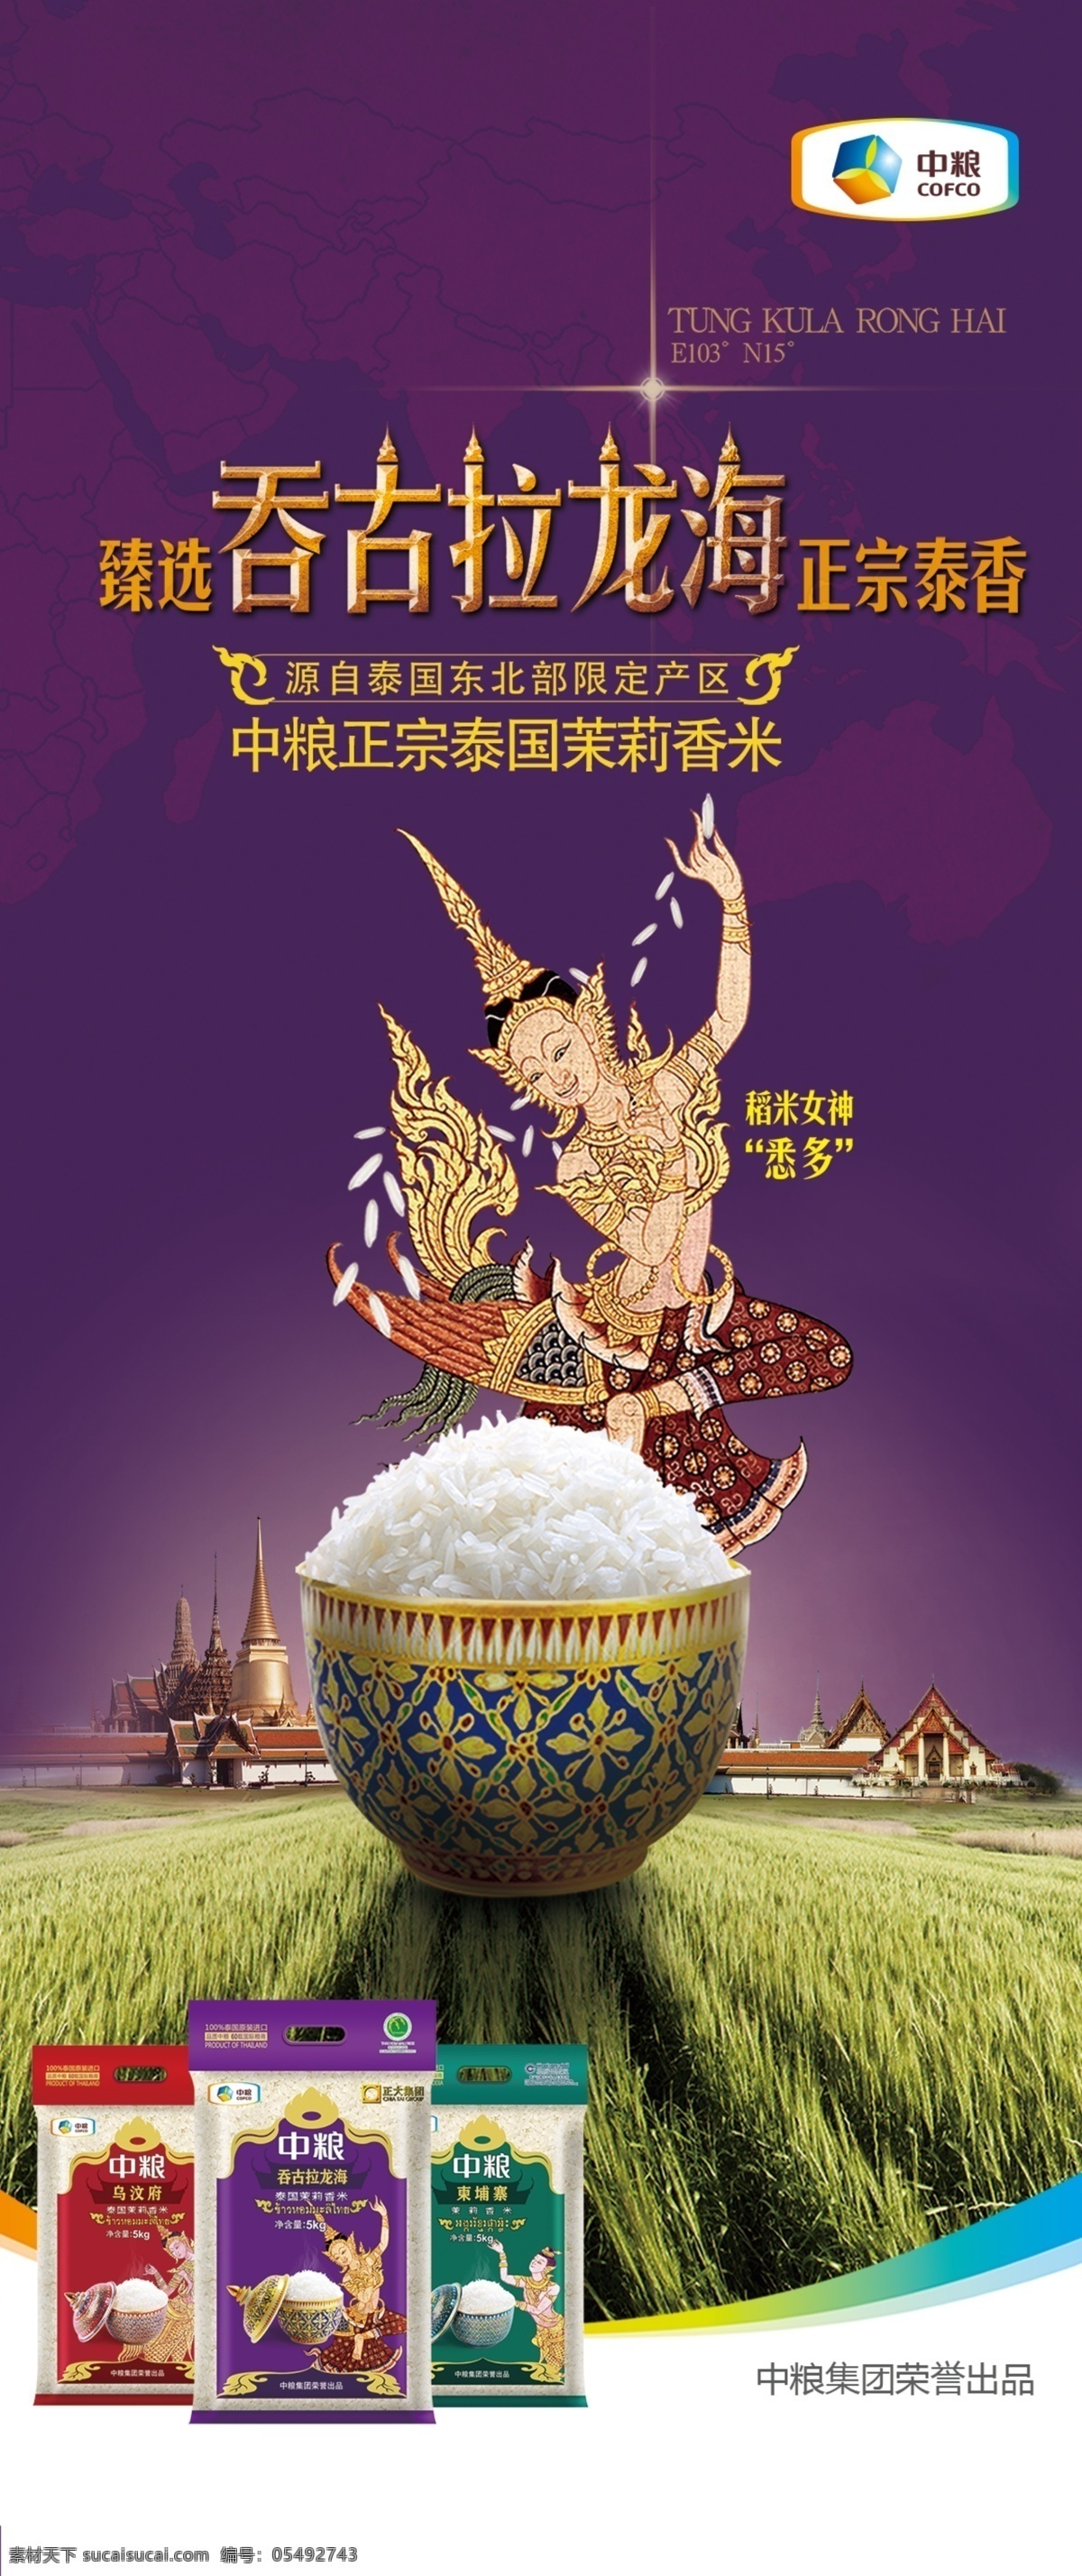 吞 古拉 龙海 泰国 香米 中粮集团 吞古拉龙海 泰国香米 稻米女神 悉多